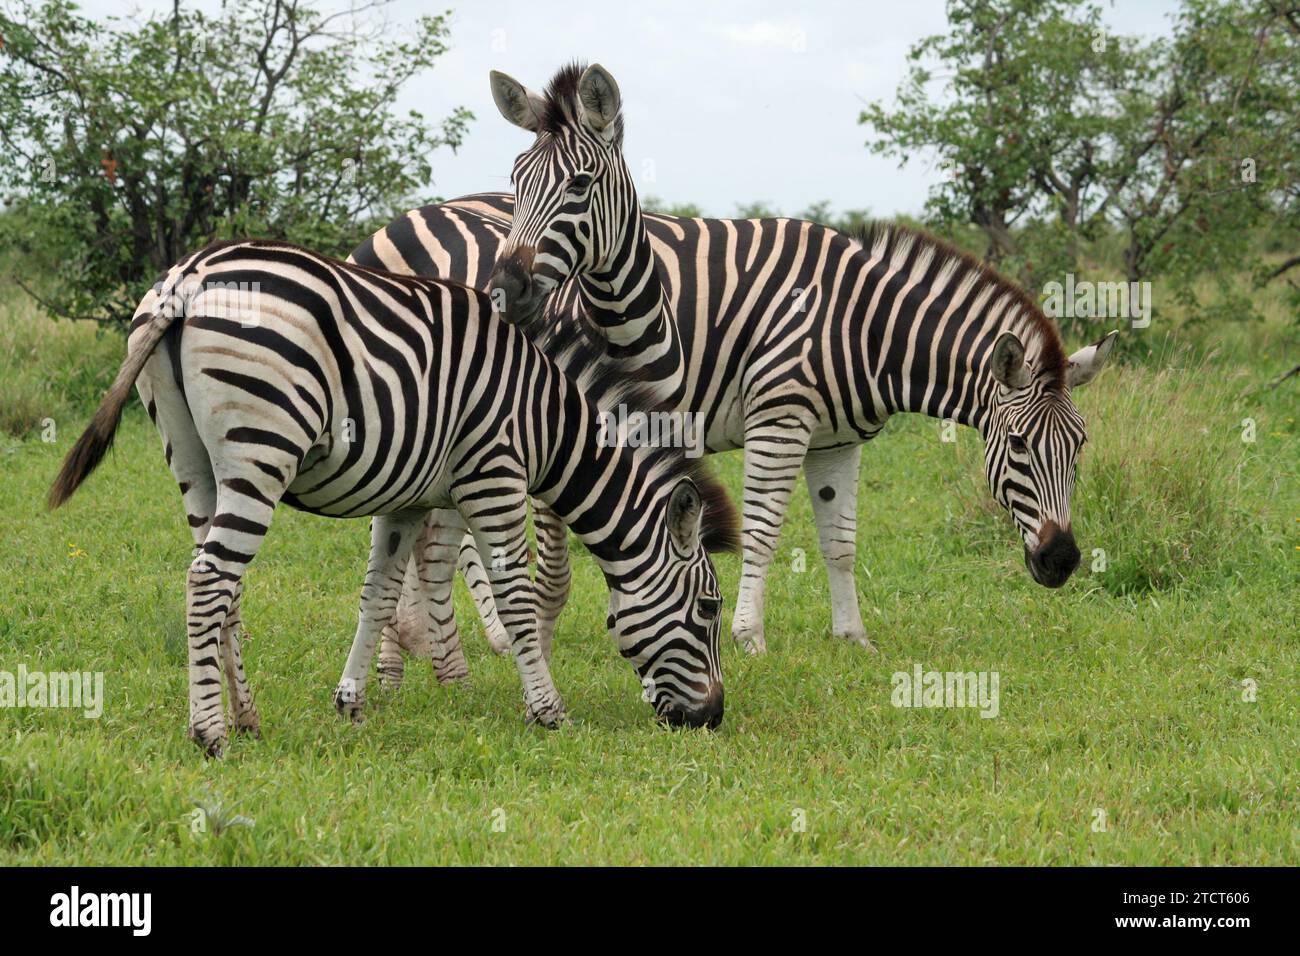 Groupe de trois zébrés paissant dans le parc national Kruger, en Afrique du Sud, dans une herbe verte luxuriante montrant le meilleur de la faune africaine Banque D'Images